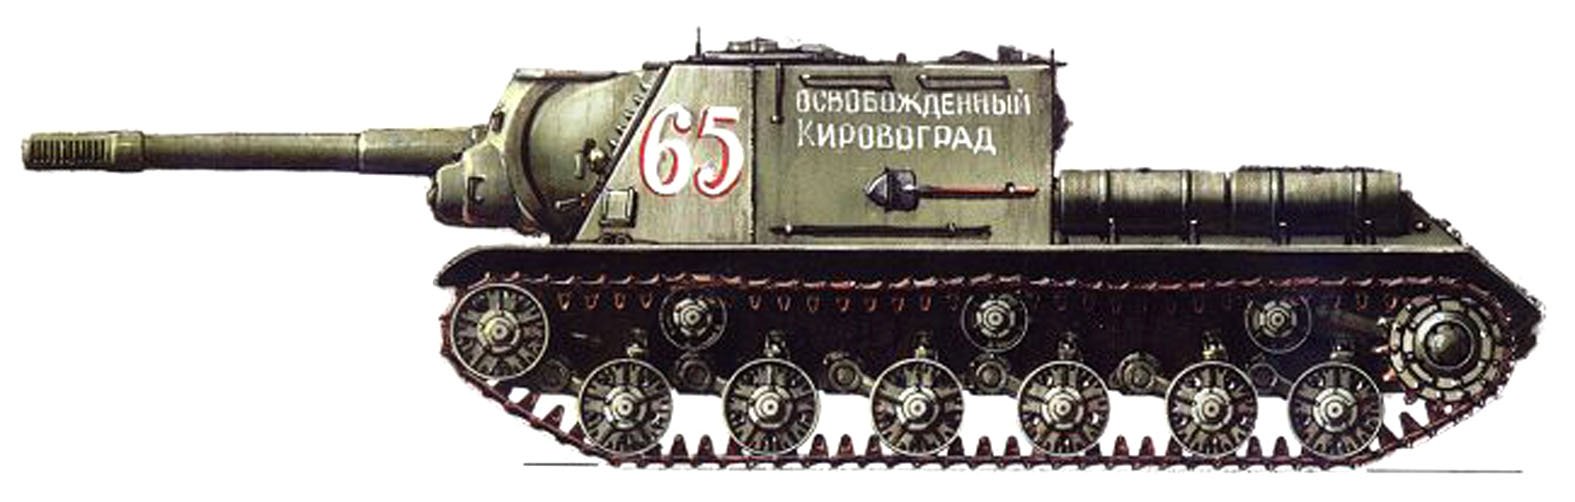 152. Самоходка ИСУ-152 зверобой. ИСУ 152 вид сбоку. Танк СССР ИСУ 152. ИС 2 И ИСУ 152.